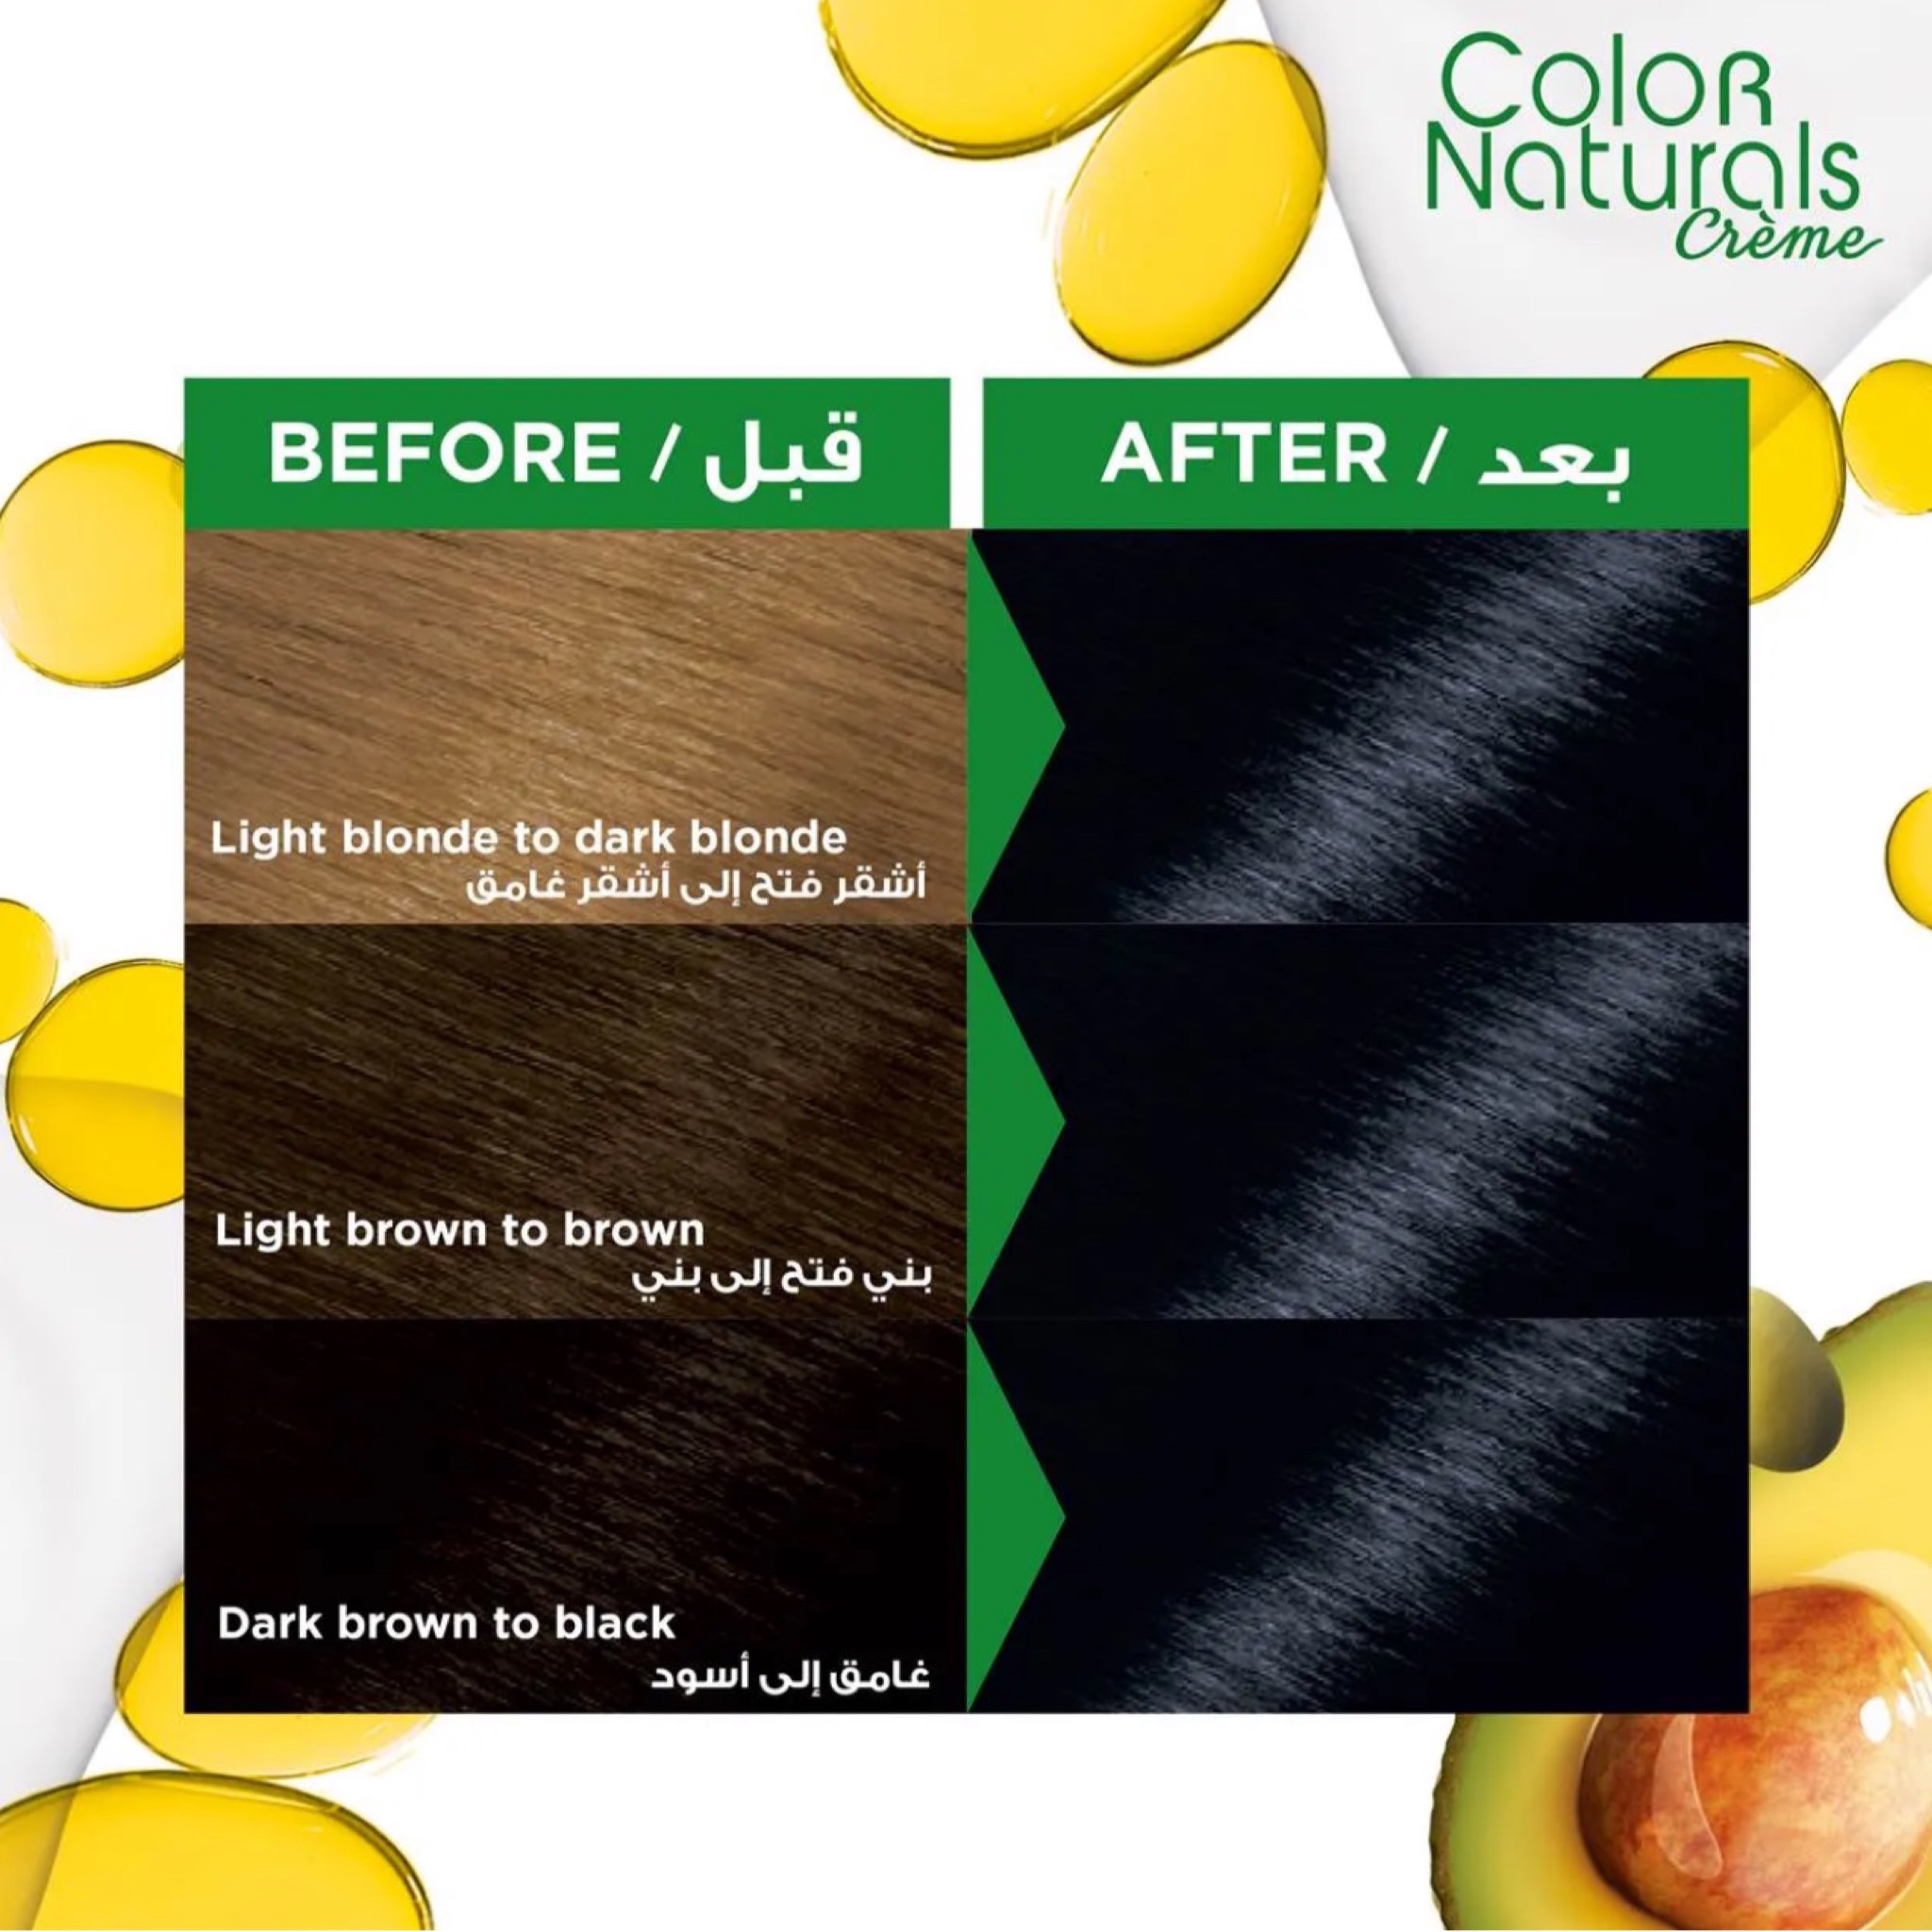 صبغة شعر غارنيه أسود مزرق لون جذاب ومميز 2.10 ( Garnier Color Naturals )